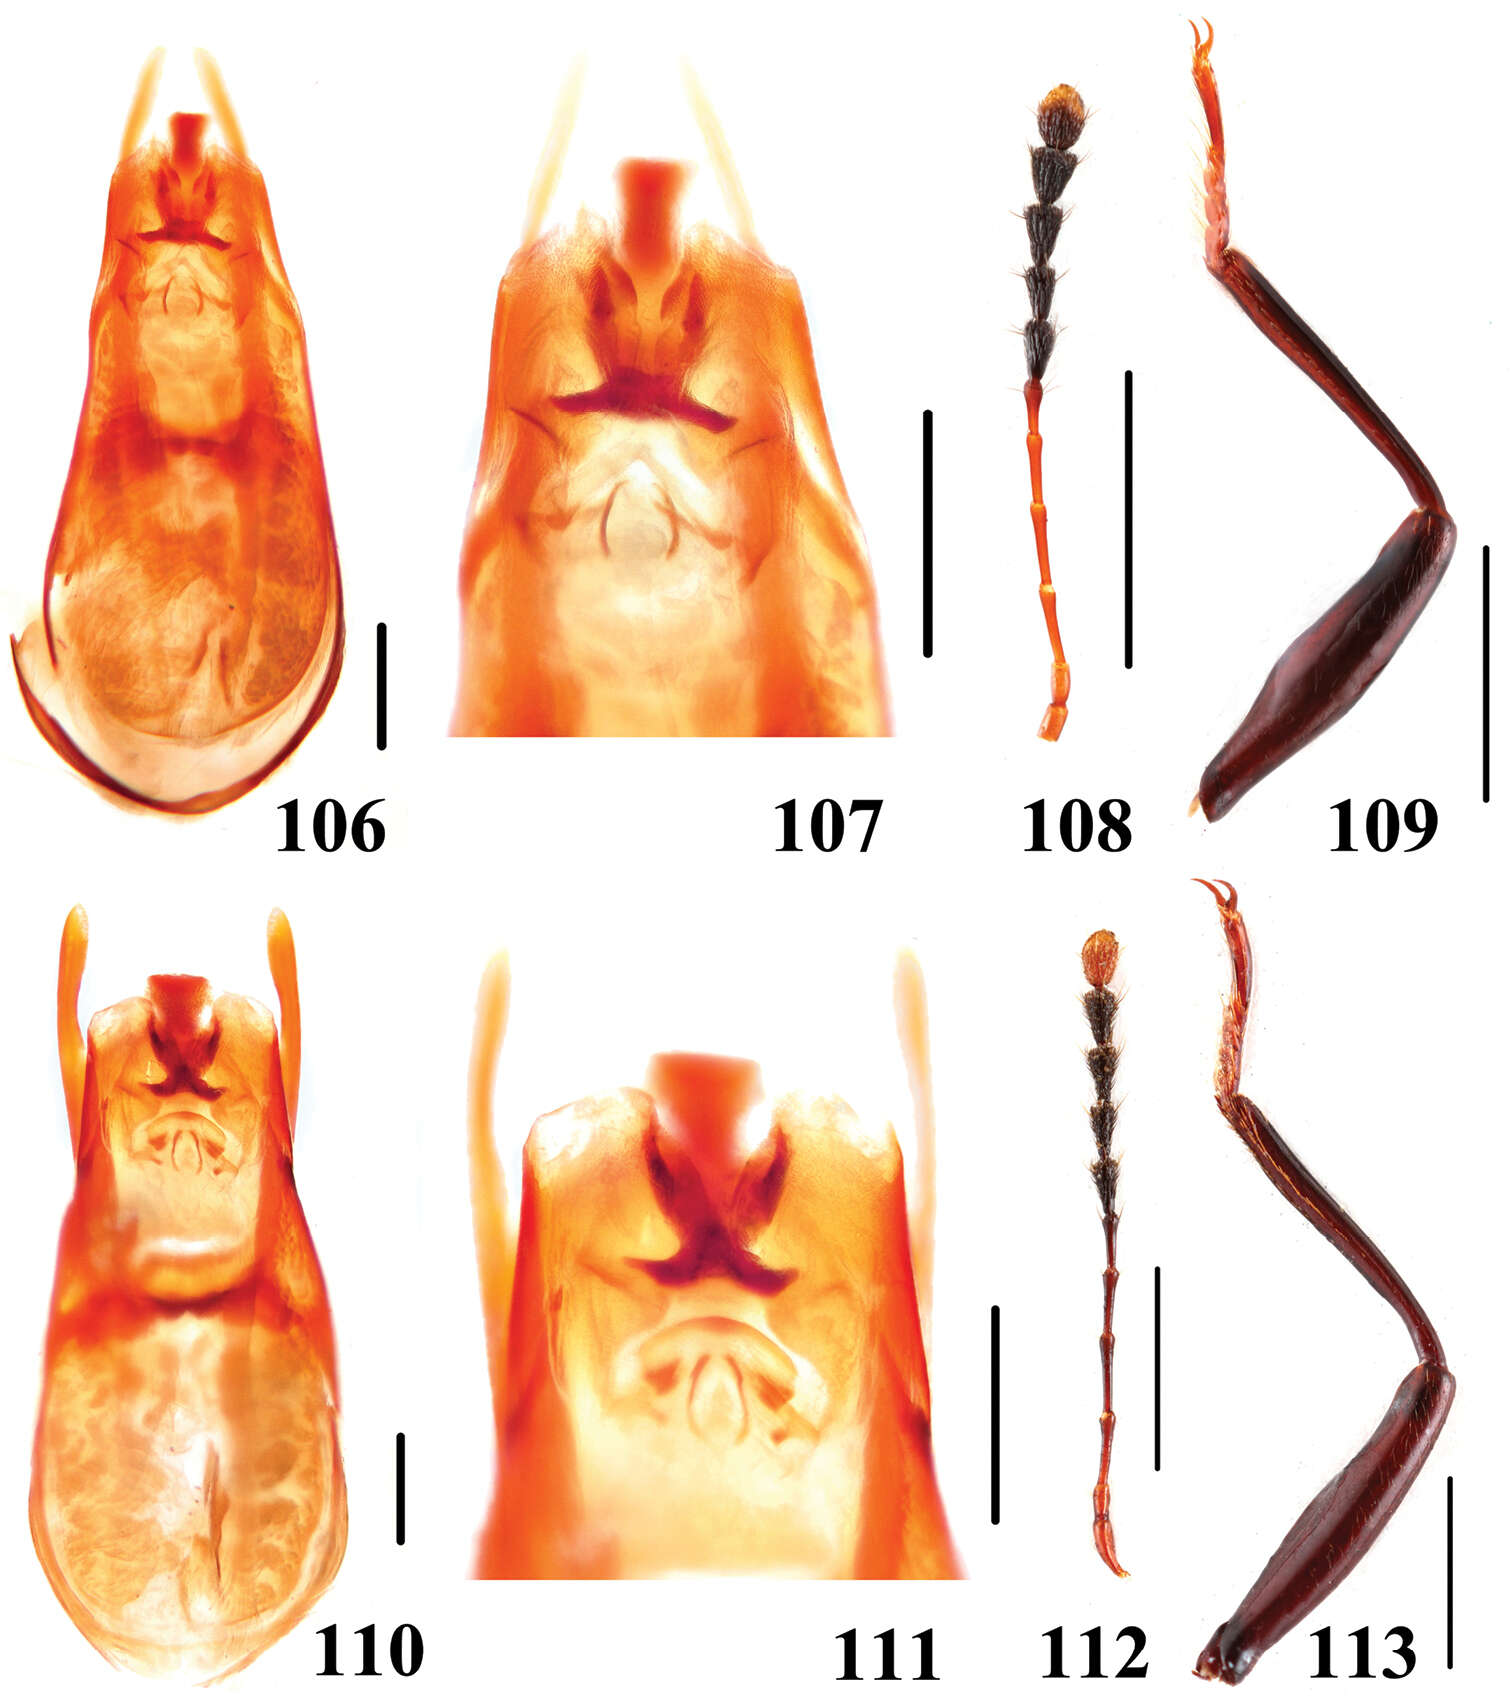 Image of Scaphidium robustum Tang, Liang, Li-Zhen Li & Wen-Jia He 2014